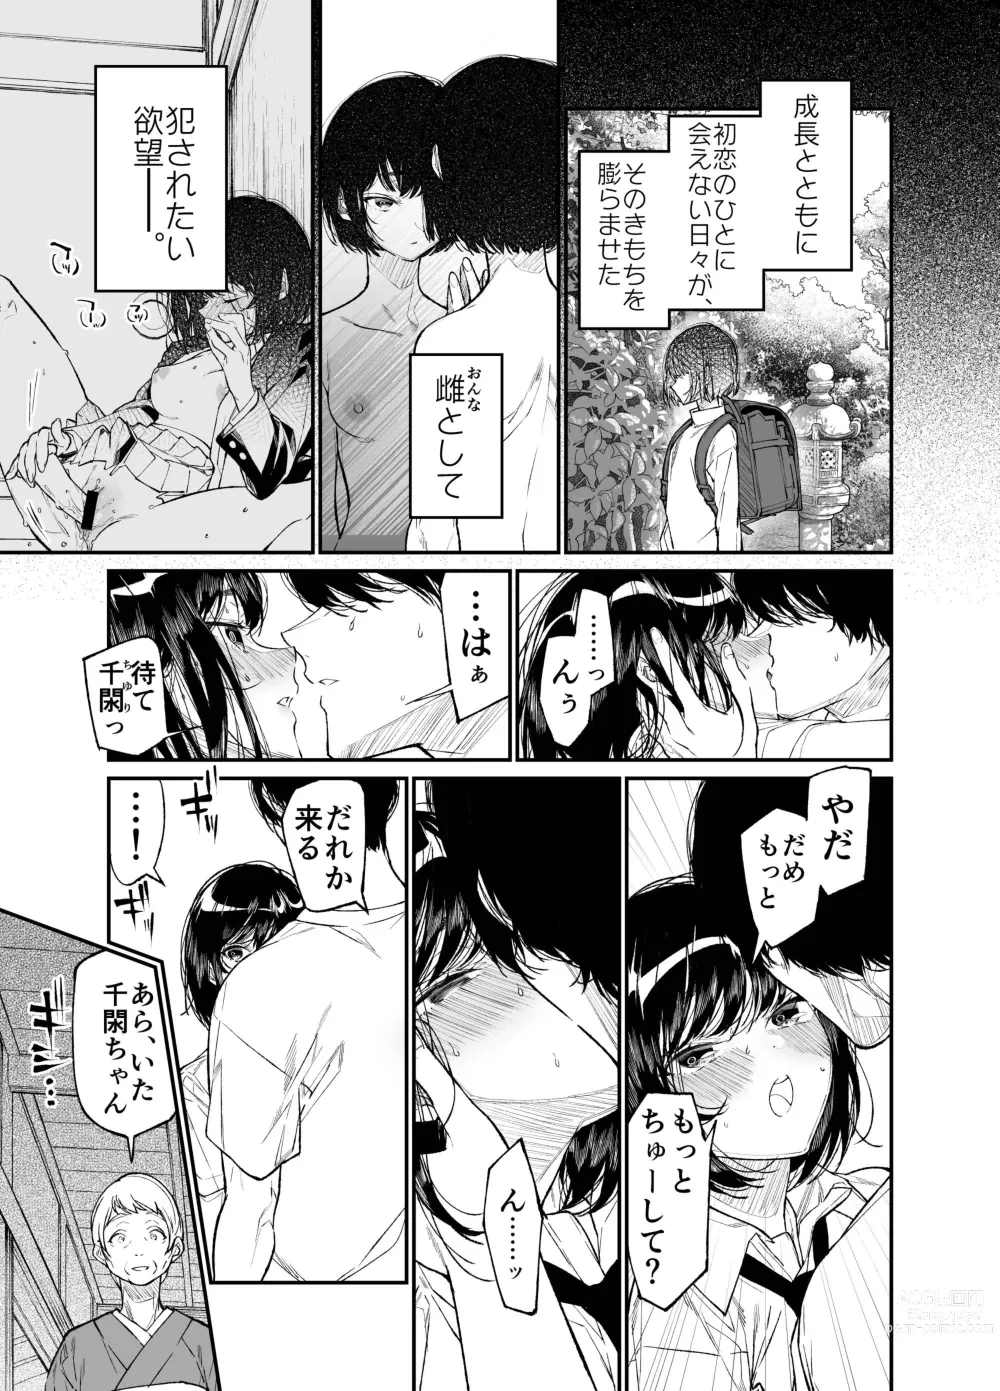 Page 15 of doujinshi Natsu, Shoujo wa Tonde, Hi ni Iru.